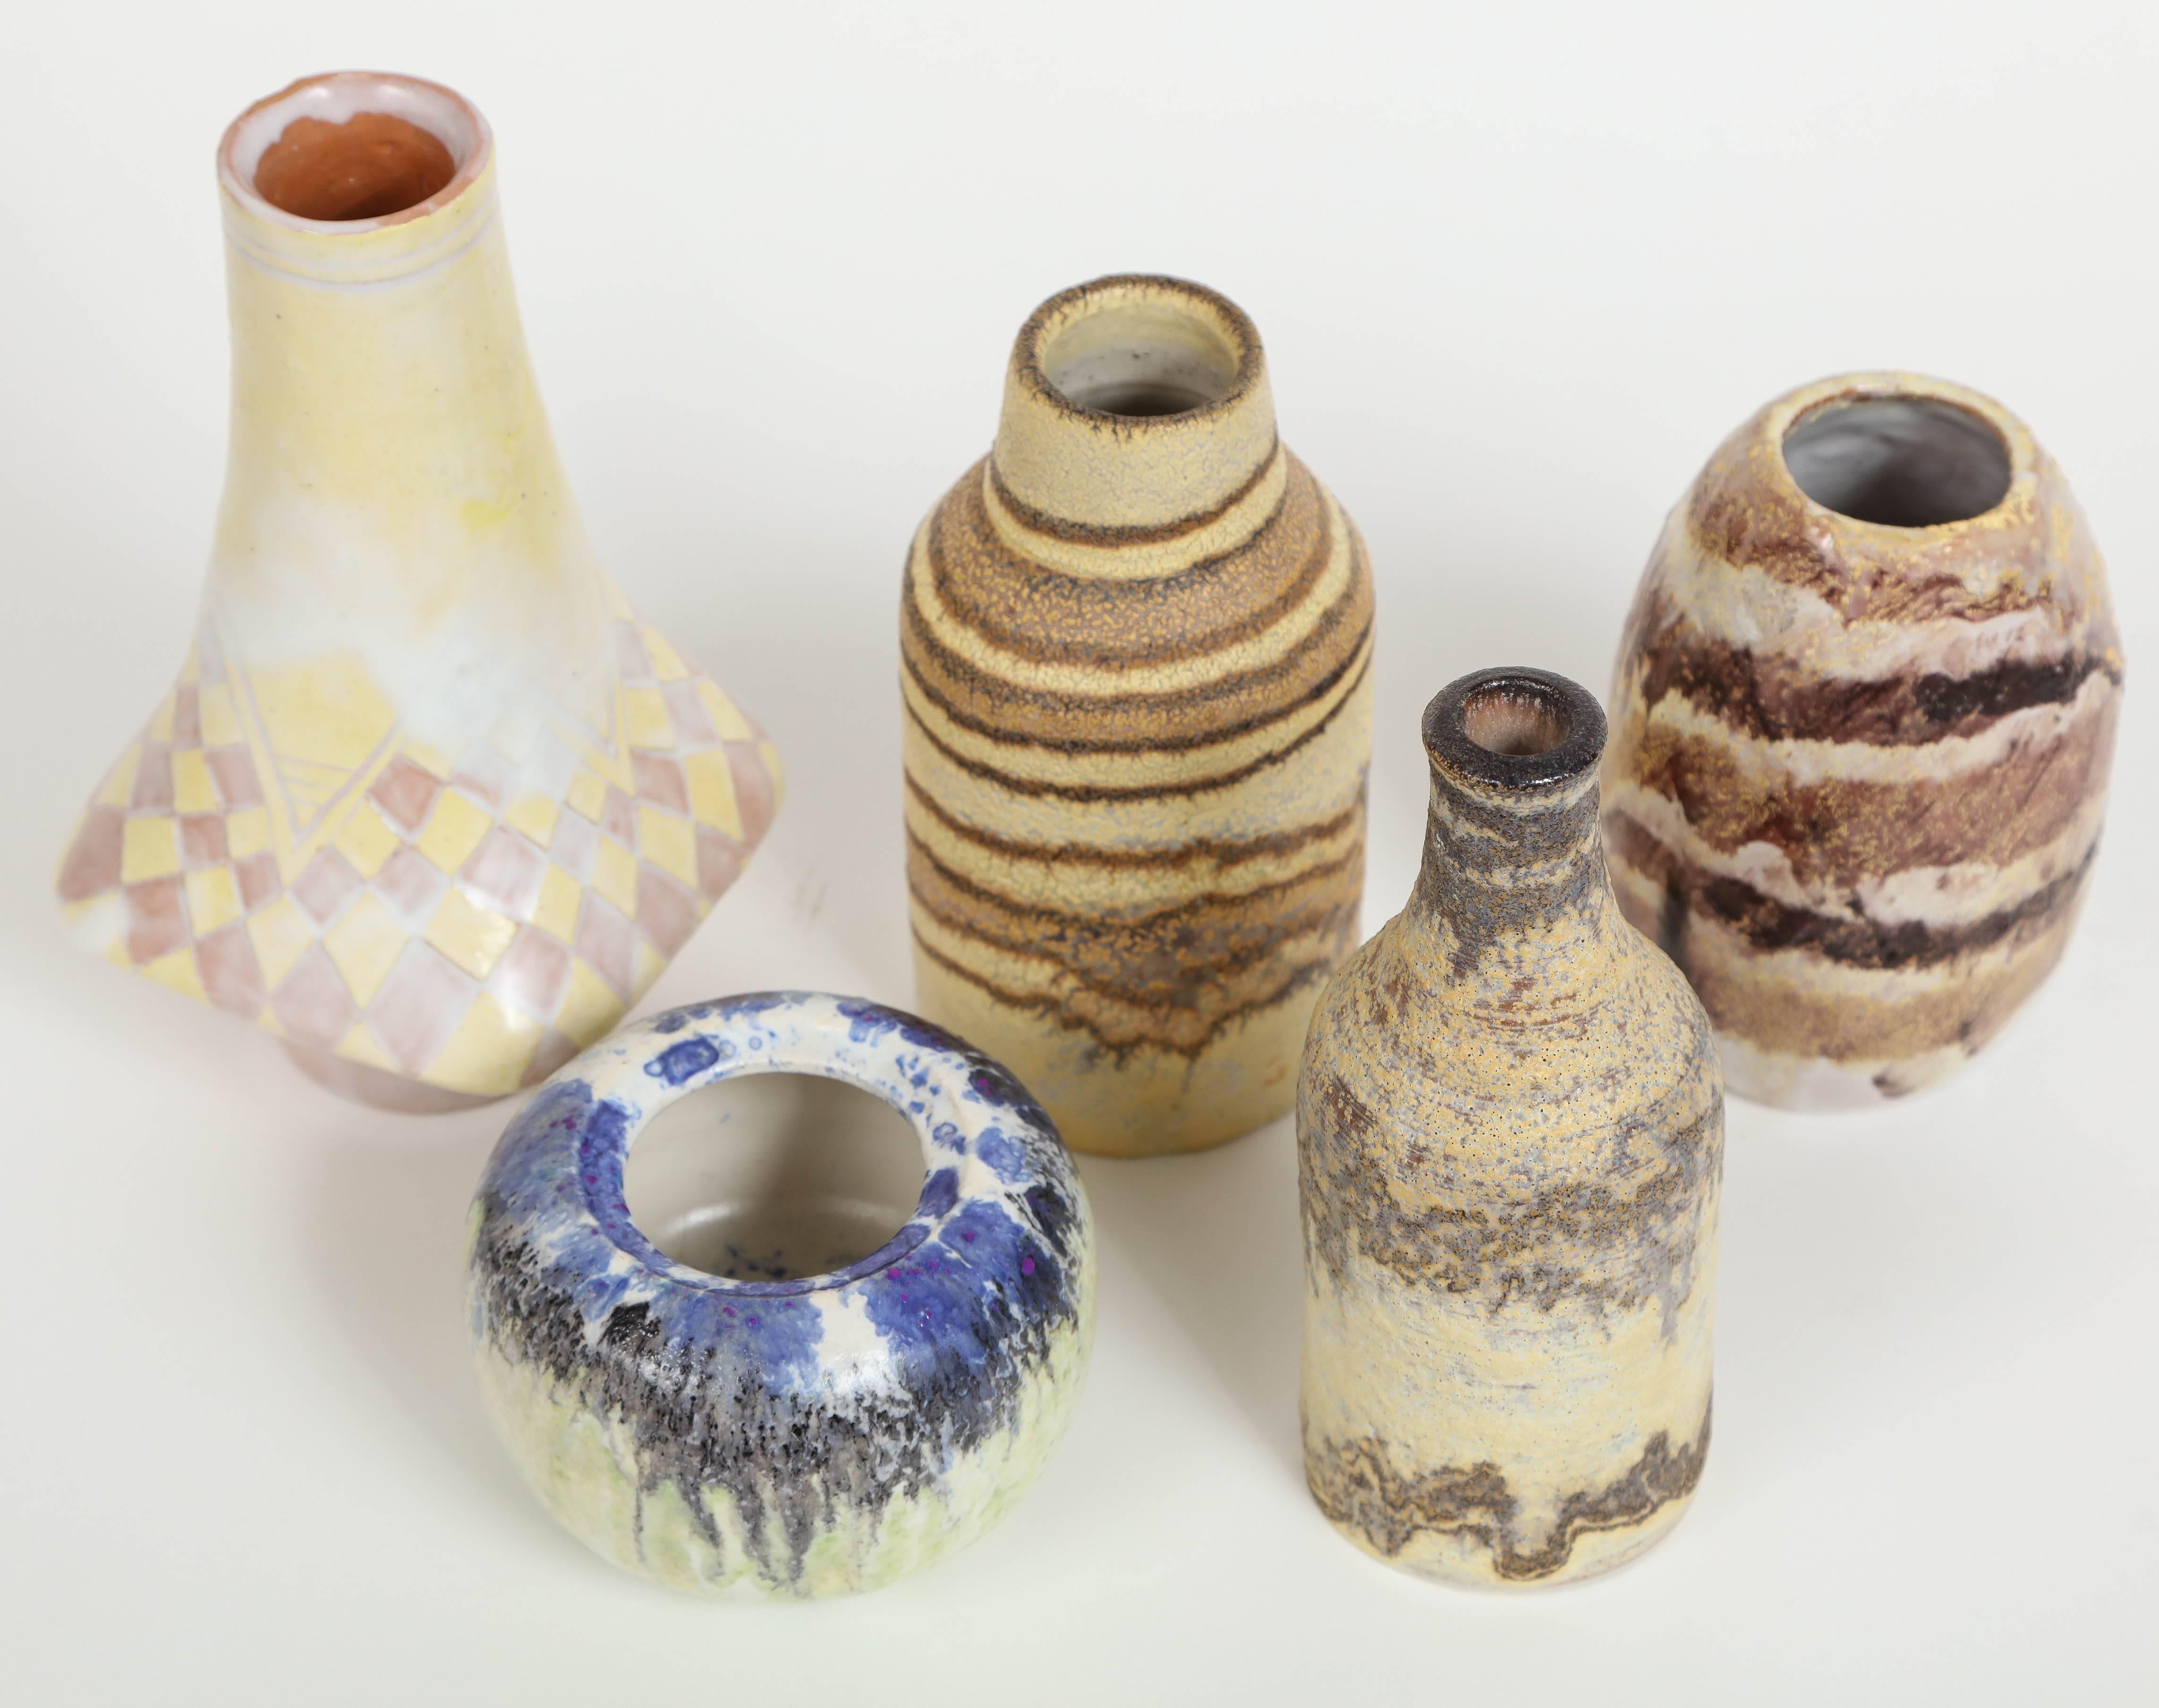 20th Century Marcello Fantoni Small Ceramic Vases, circa 1960s - 1970s For Sale